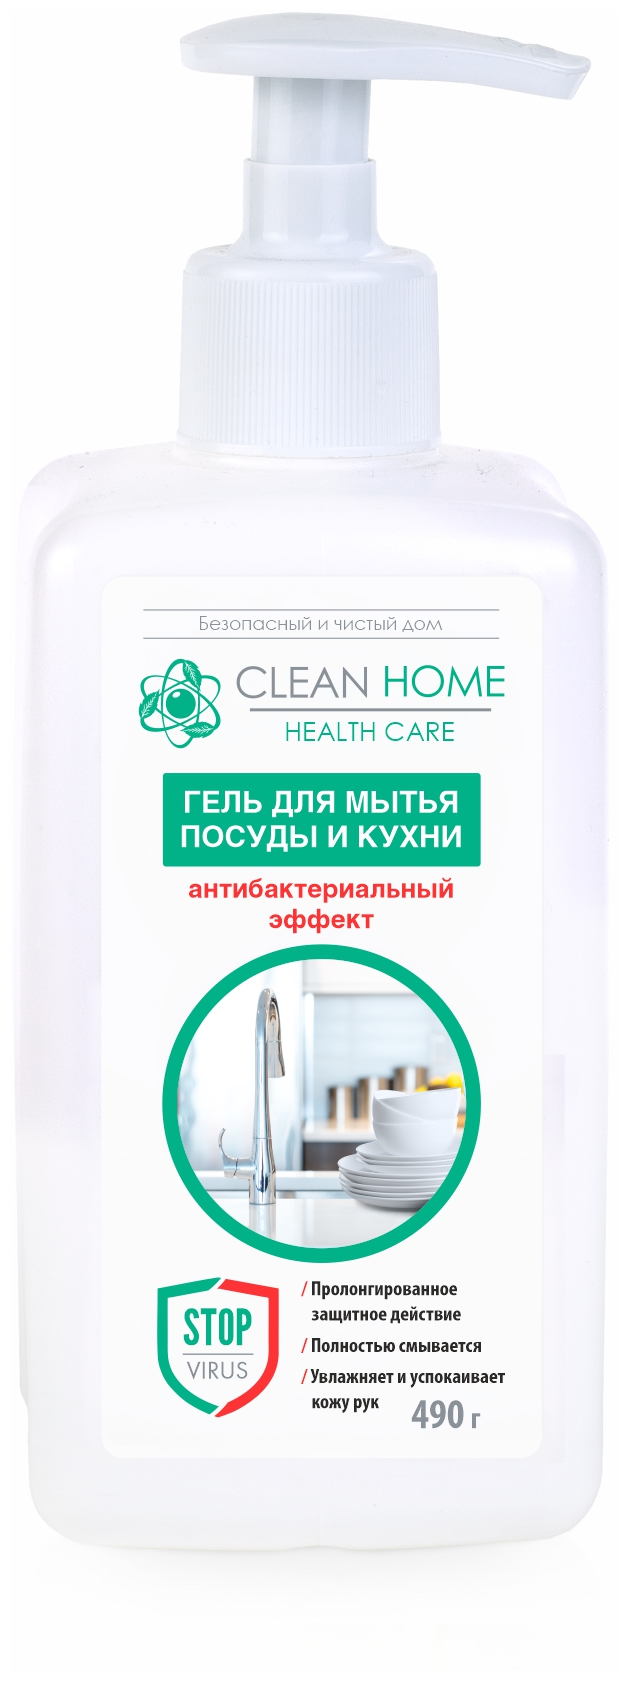 Гель для мытья посуды и кухни Clean Home Антибактериальный эффект 490 гр 7150171